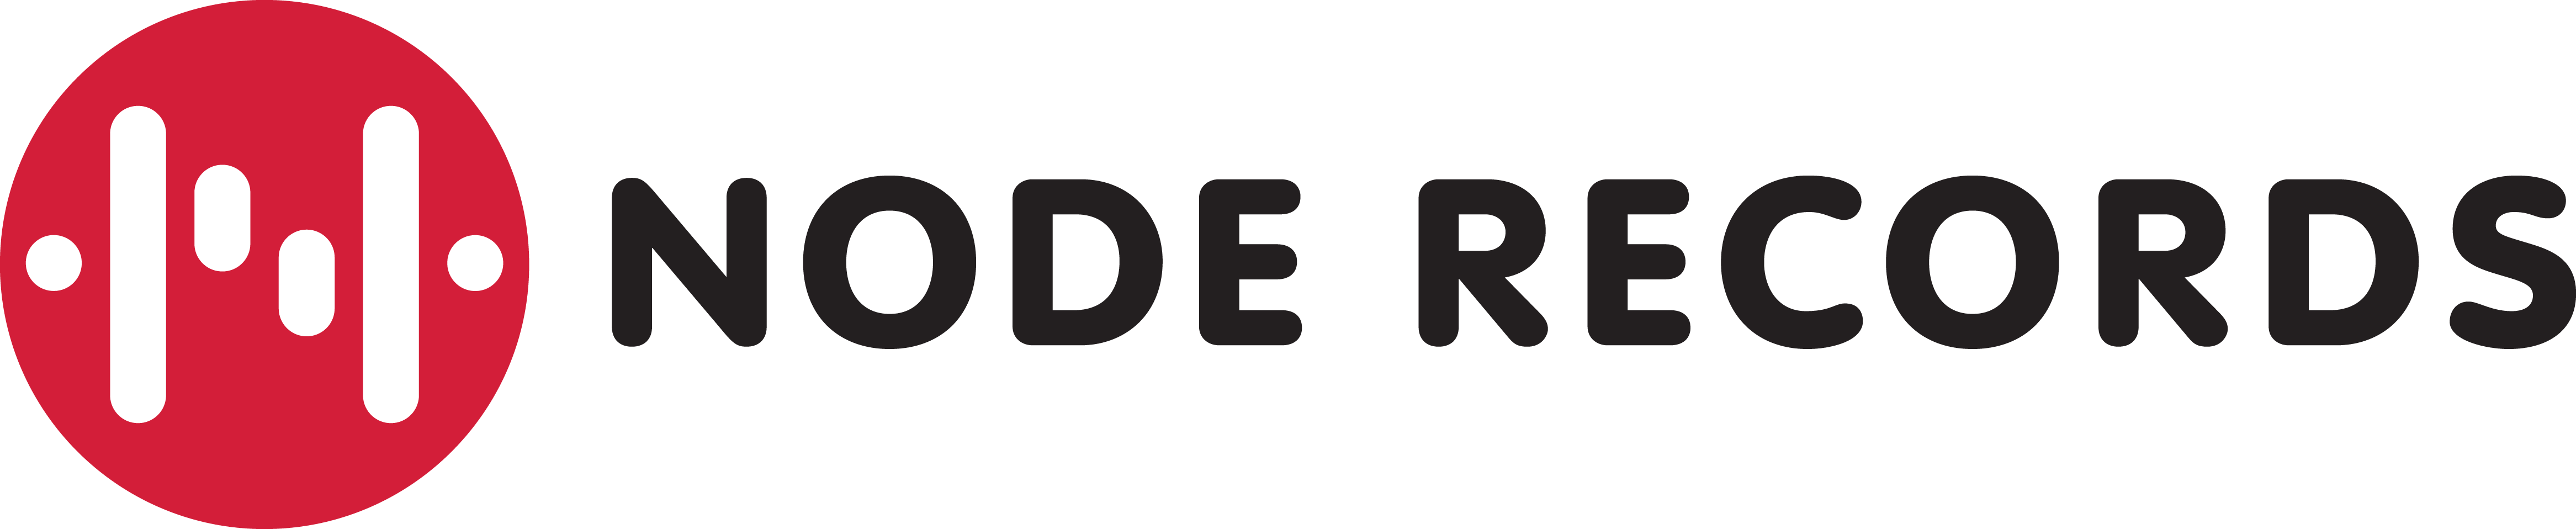 Node Records logo